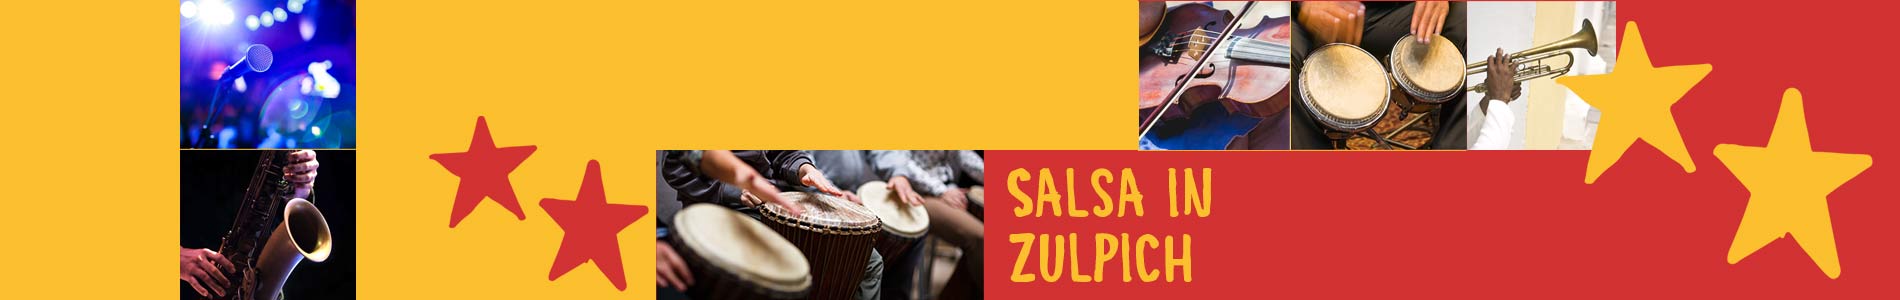 Salsa in Zulpich – Salsa lernen und tanzen, Tanzkurse, Partys, Veranstaltungen